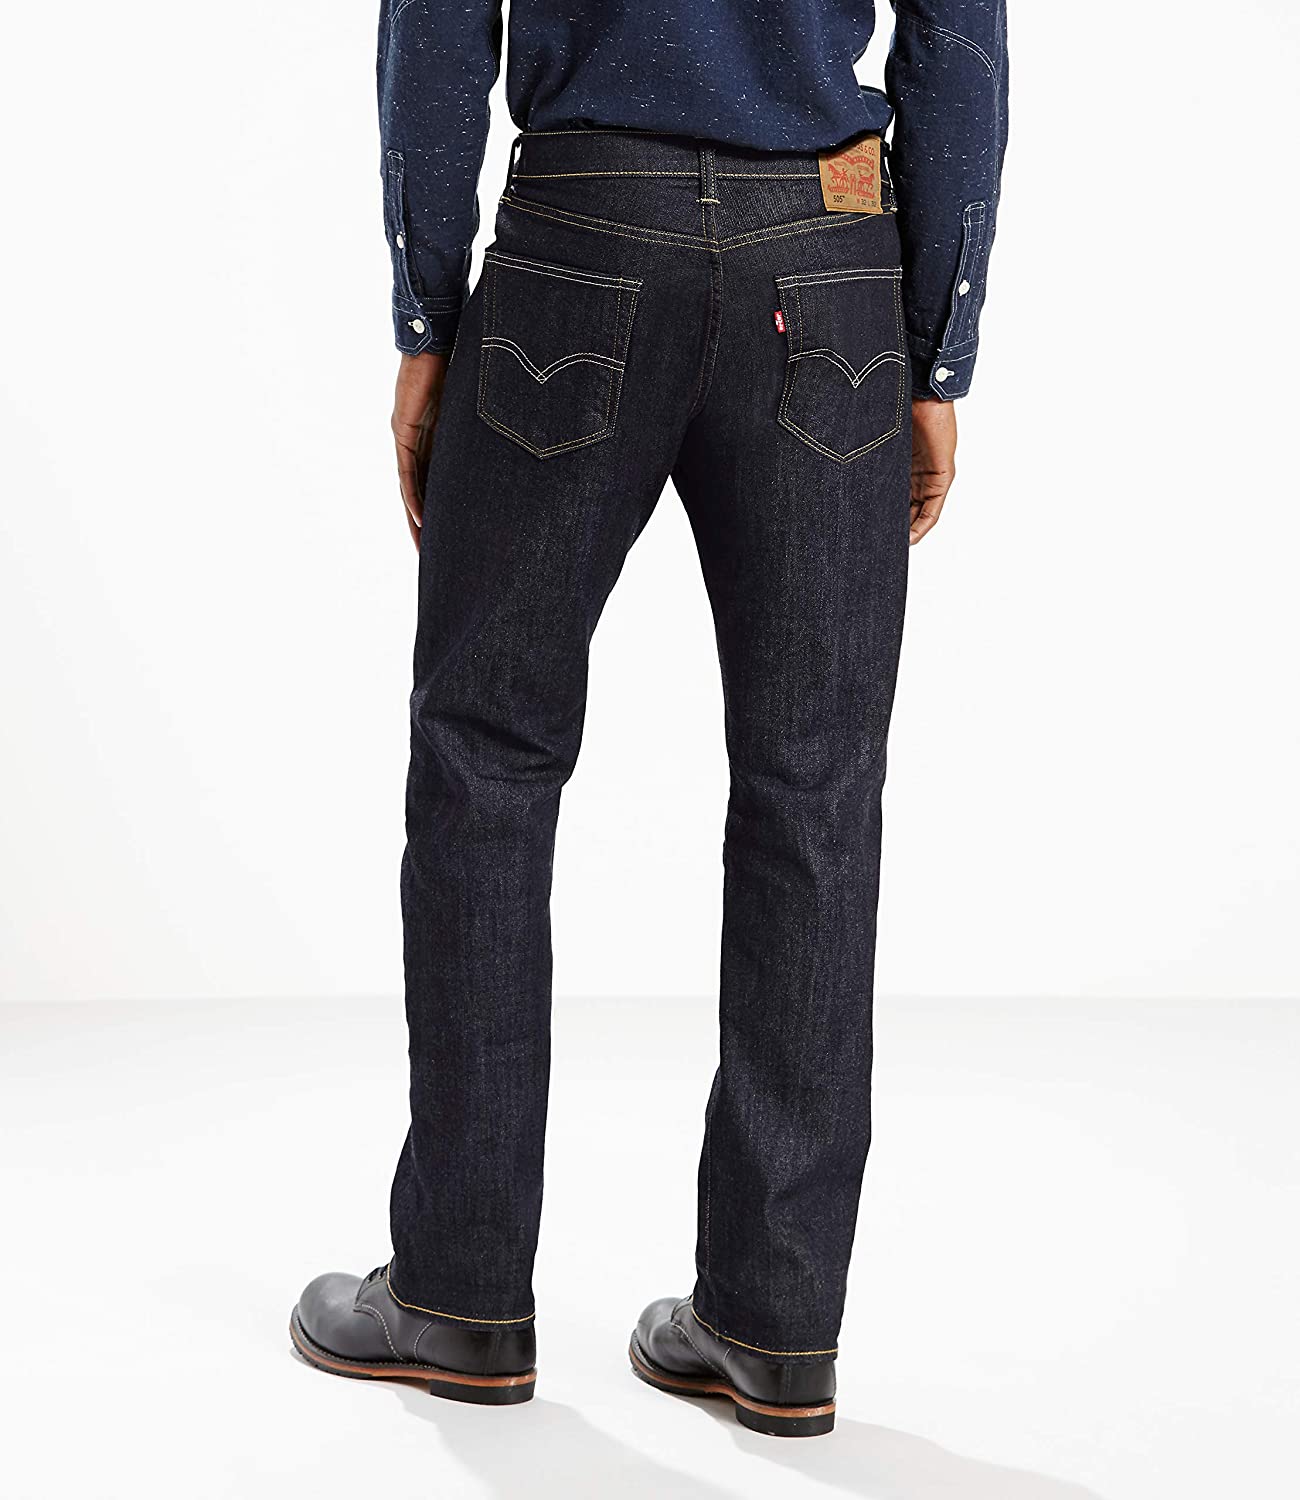 Levi's Men's 505 Regular Fit Jean, Dark, Tumbled Rigid, Size 36W x 32L ...